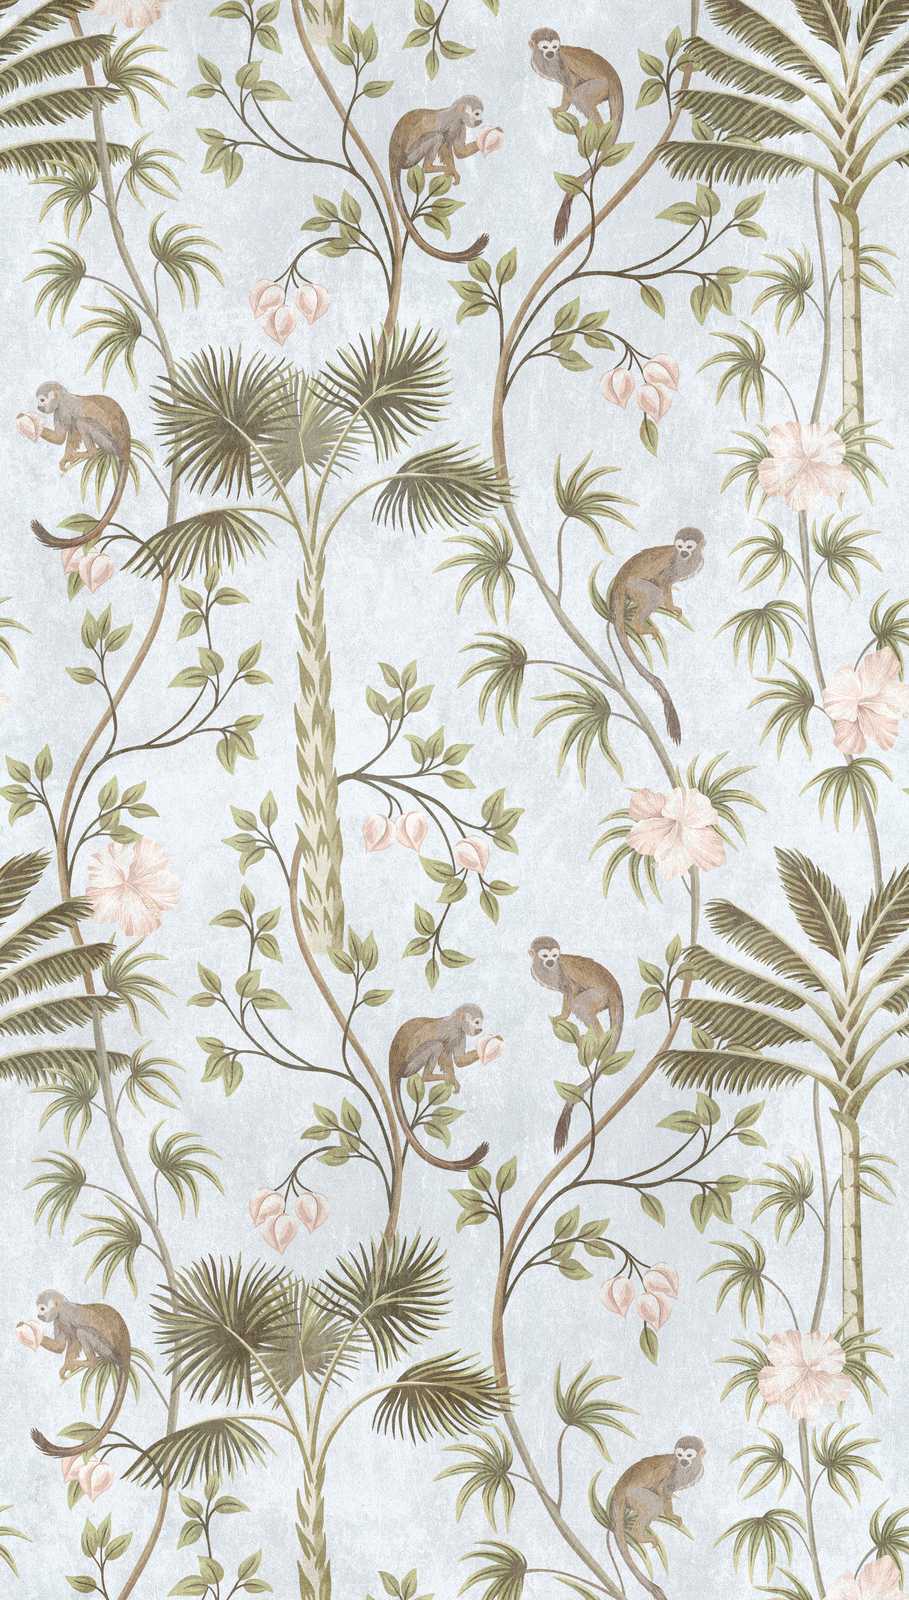             Nouveauté papier peint | Papier peint jungle avec motif palmiers & singes
        